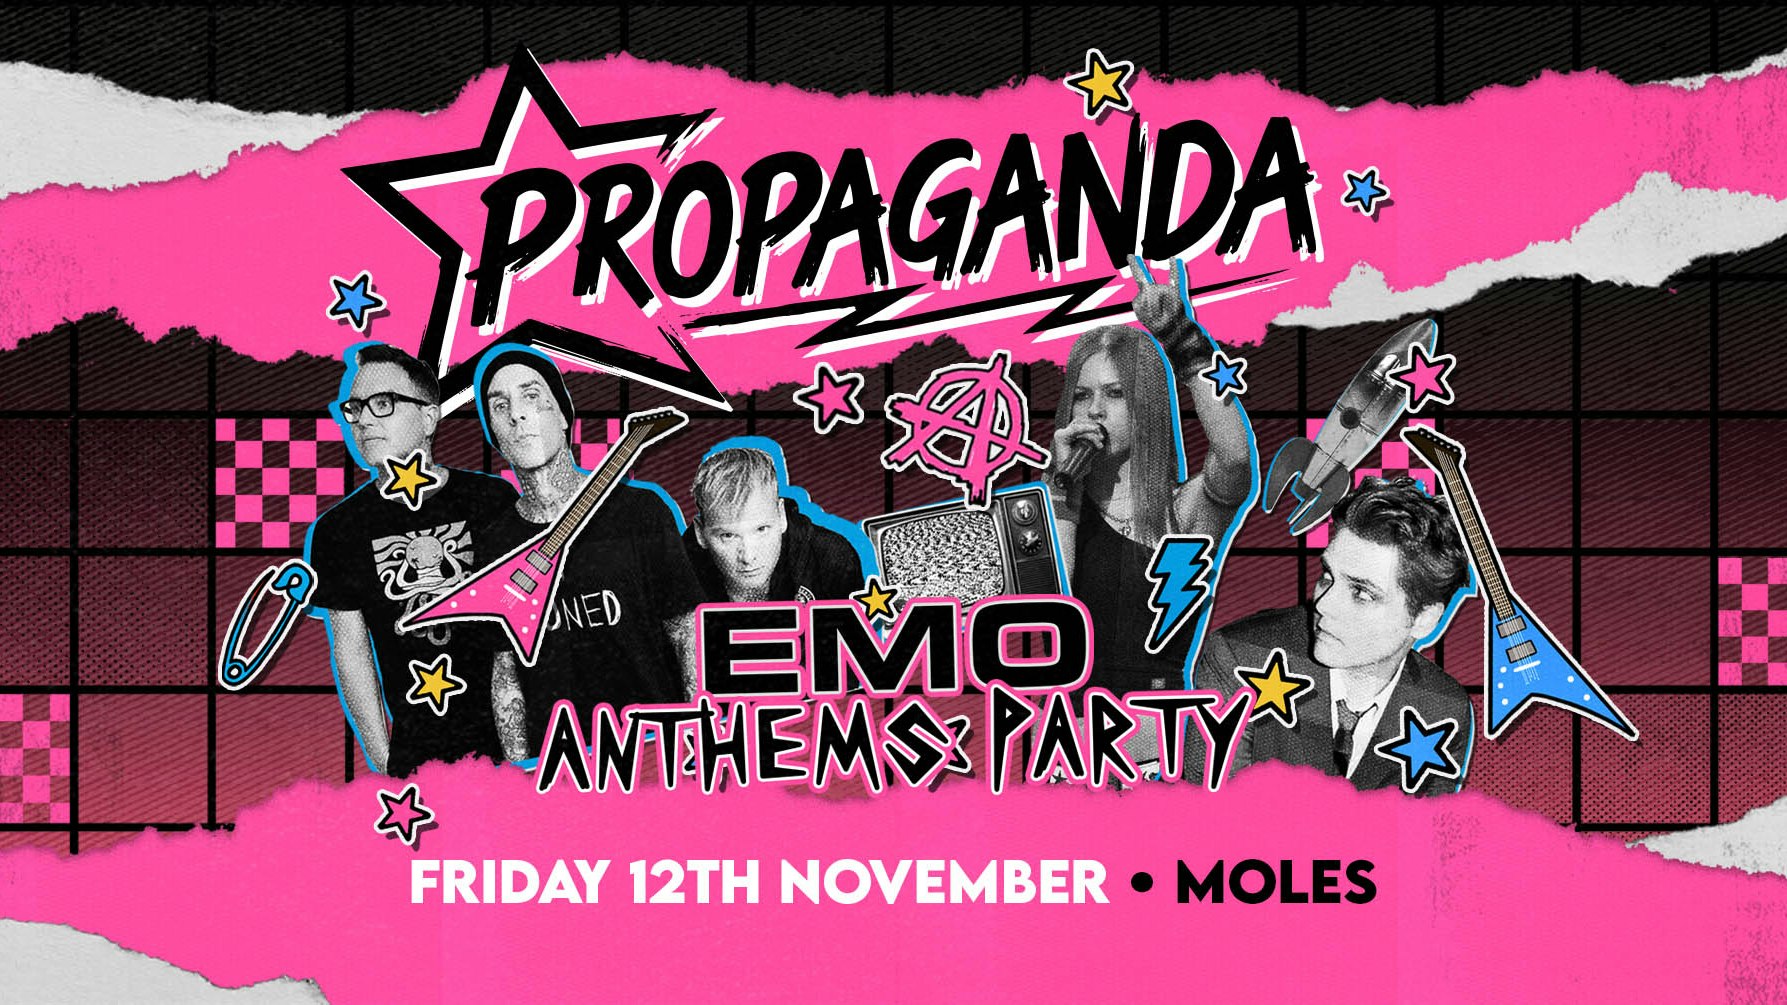 Propaganda Bath – Emo Anthems Party!